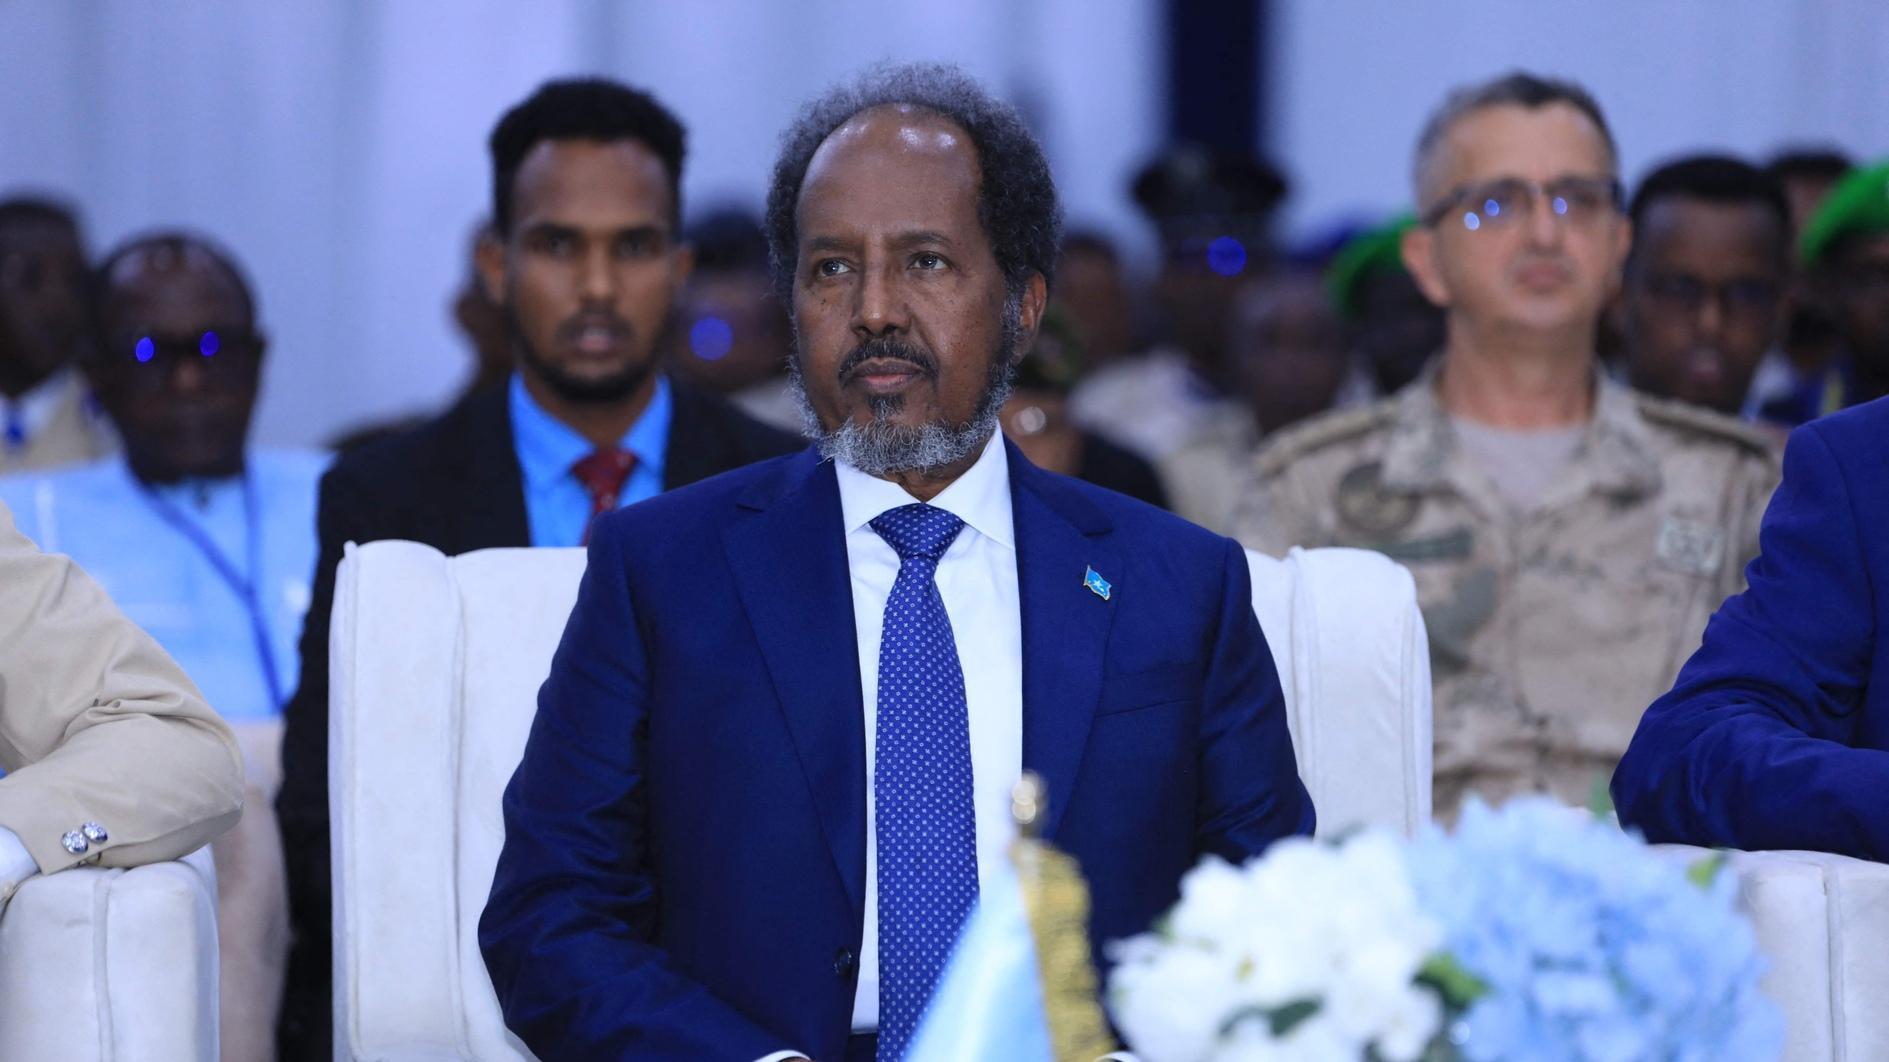 De zoon van de Somalische leider riskeert een gevangenisstraf wegens dodelijk ongeval